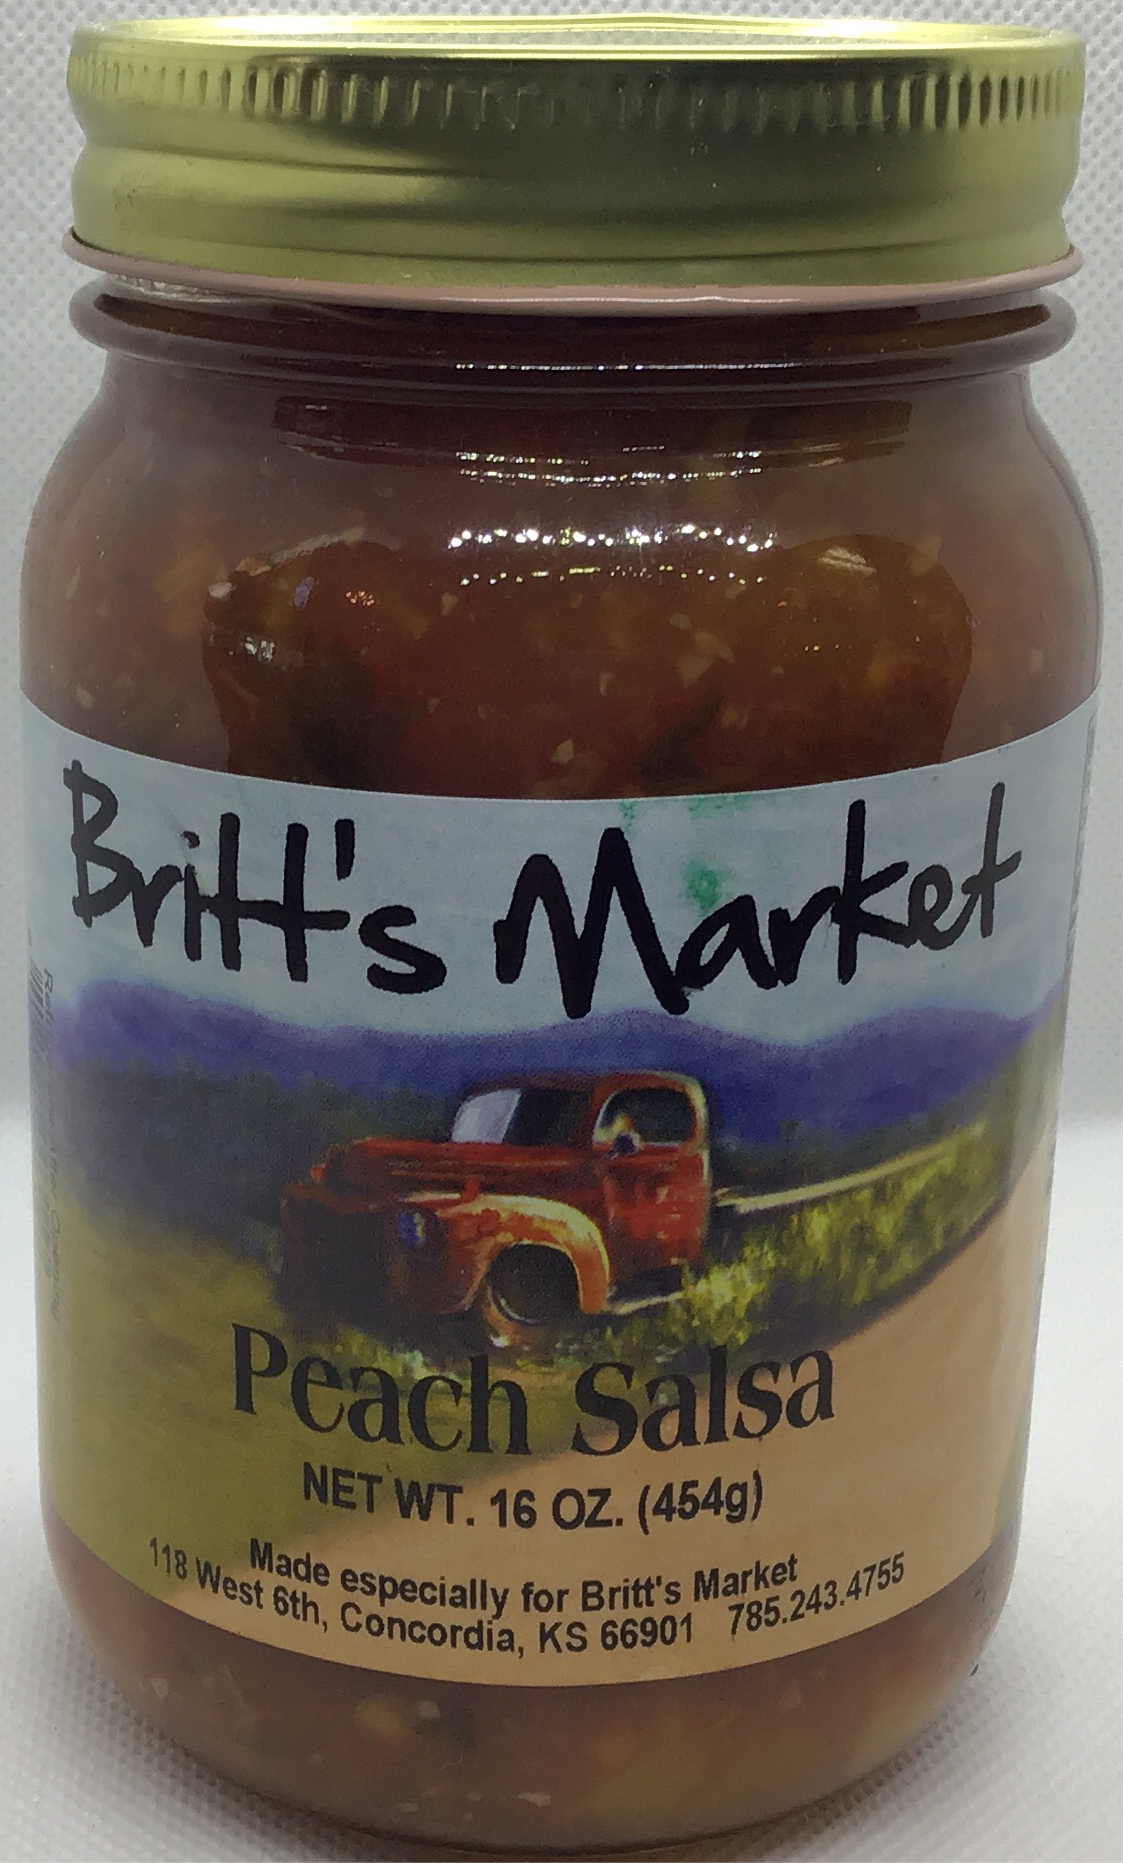 Britt's Peach Salsa